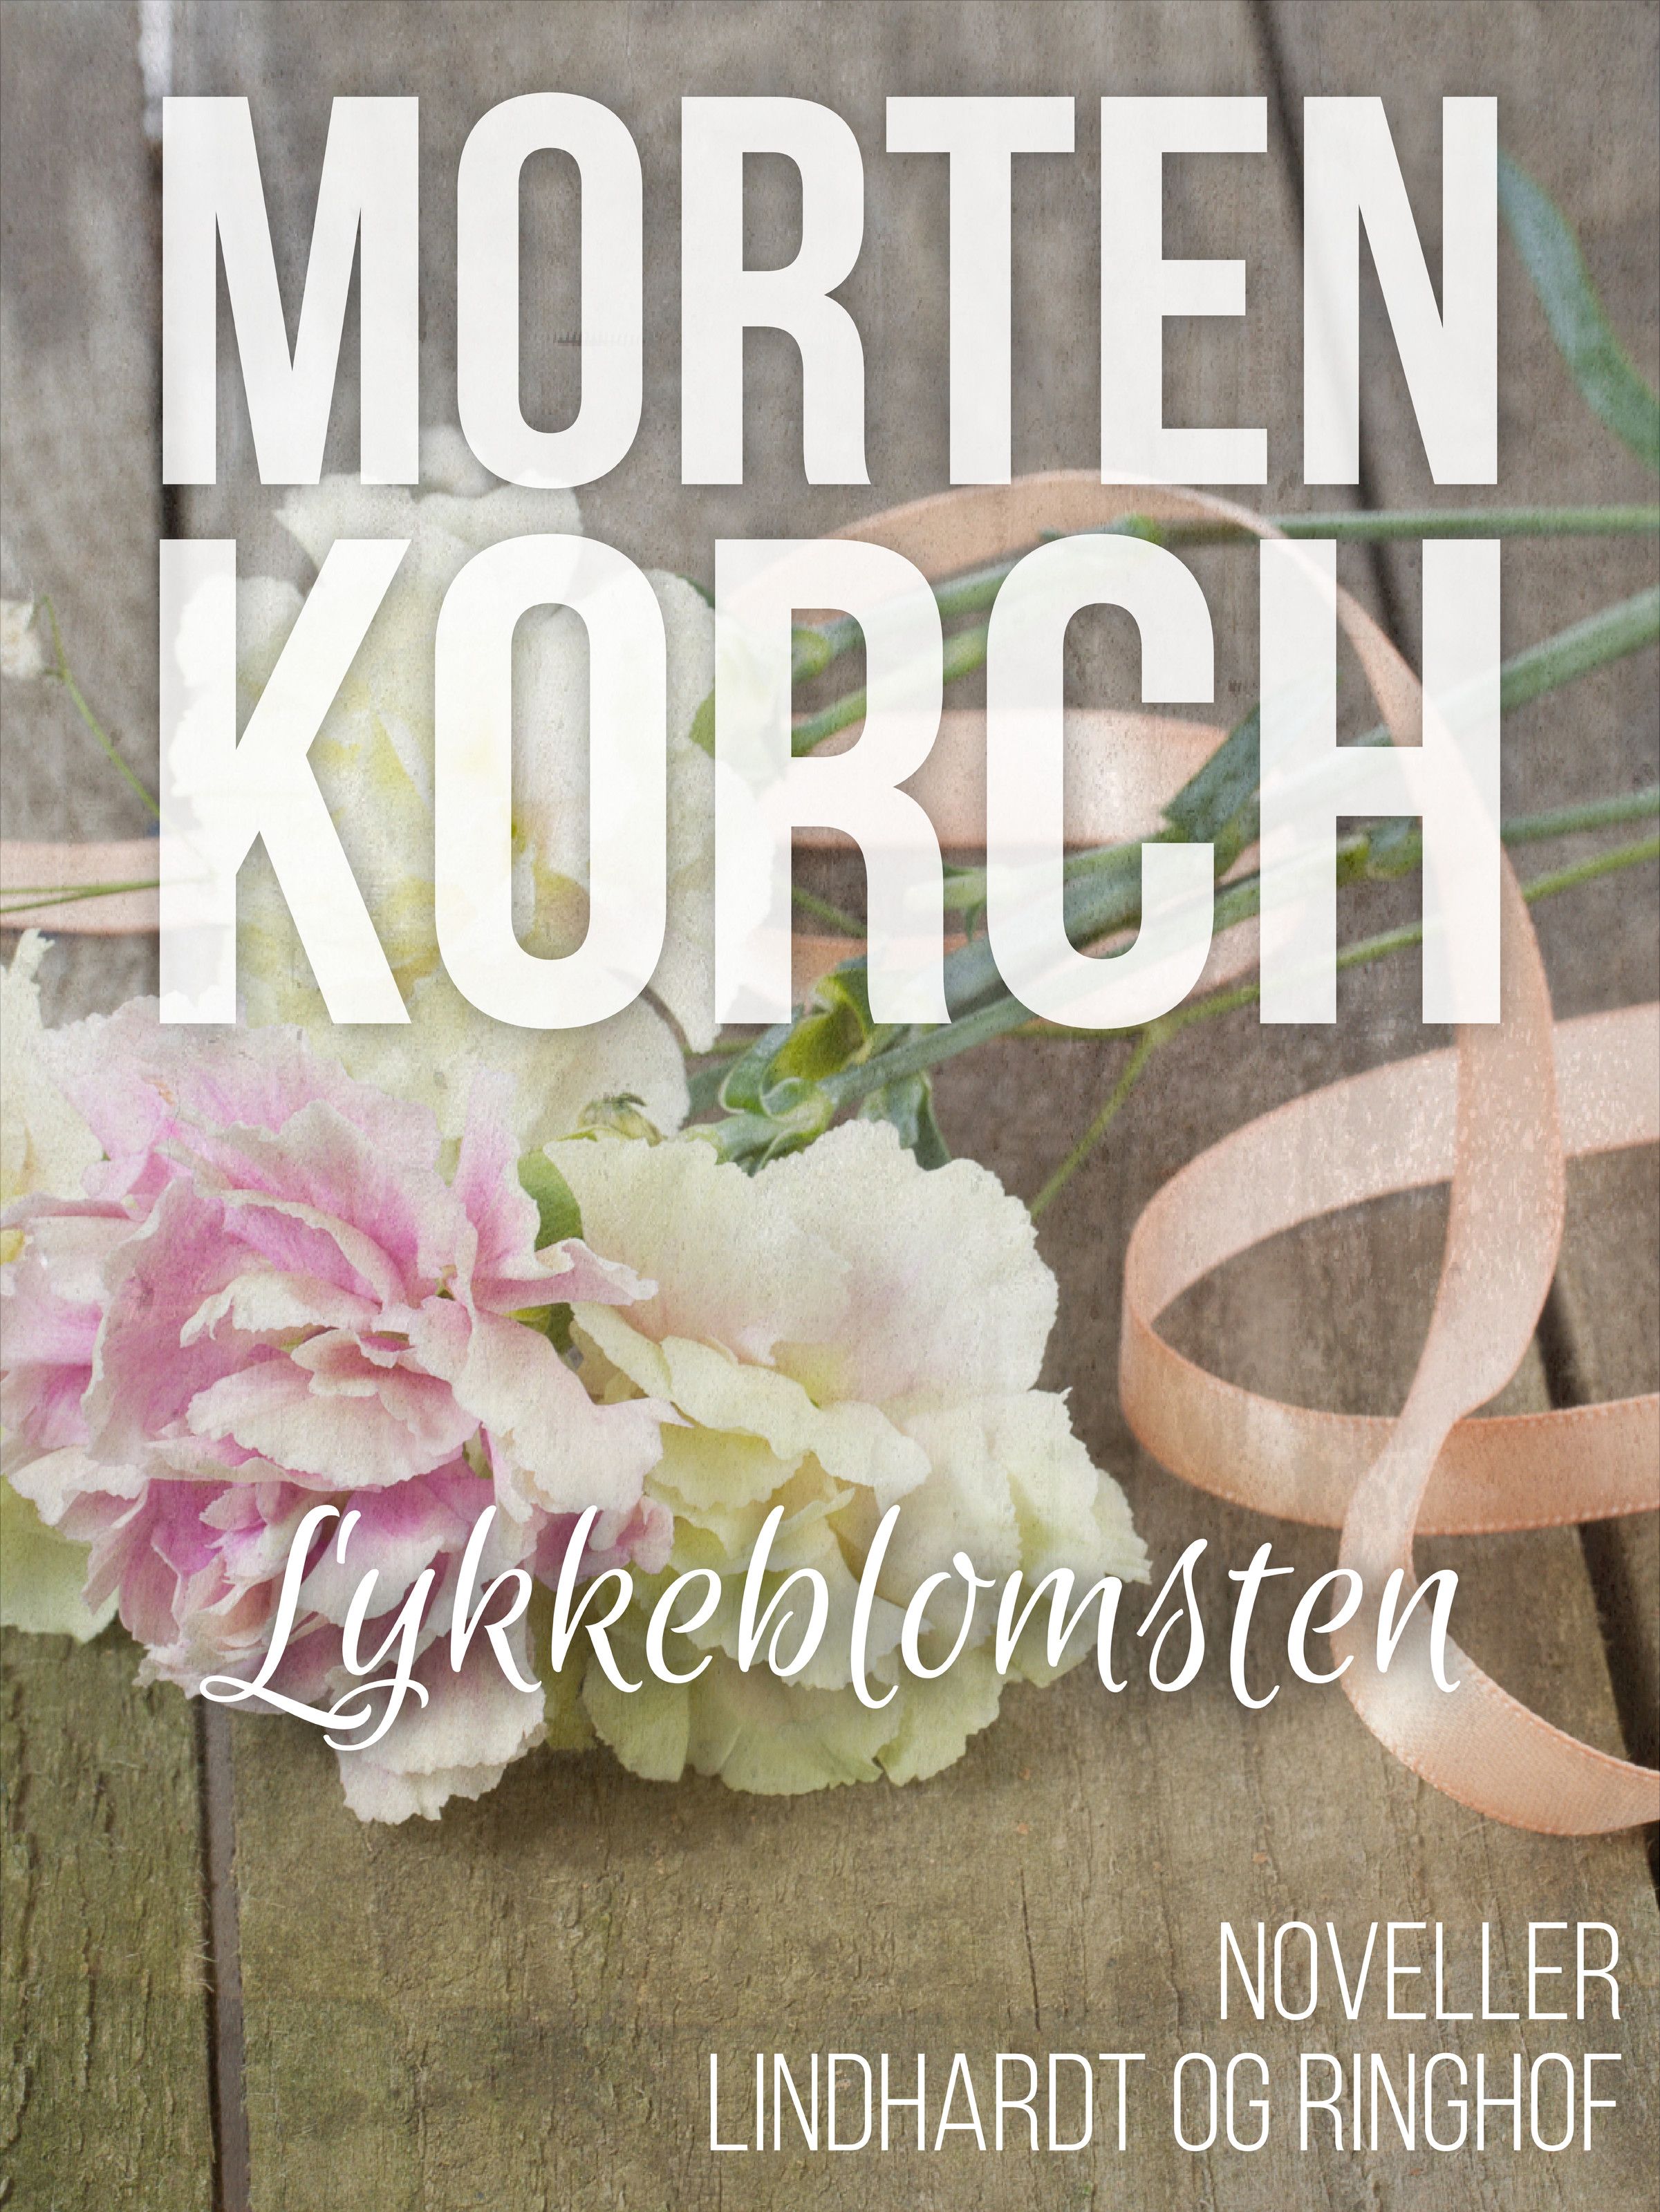 Lykkeblomsten, ljudbok av Morten Korch